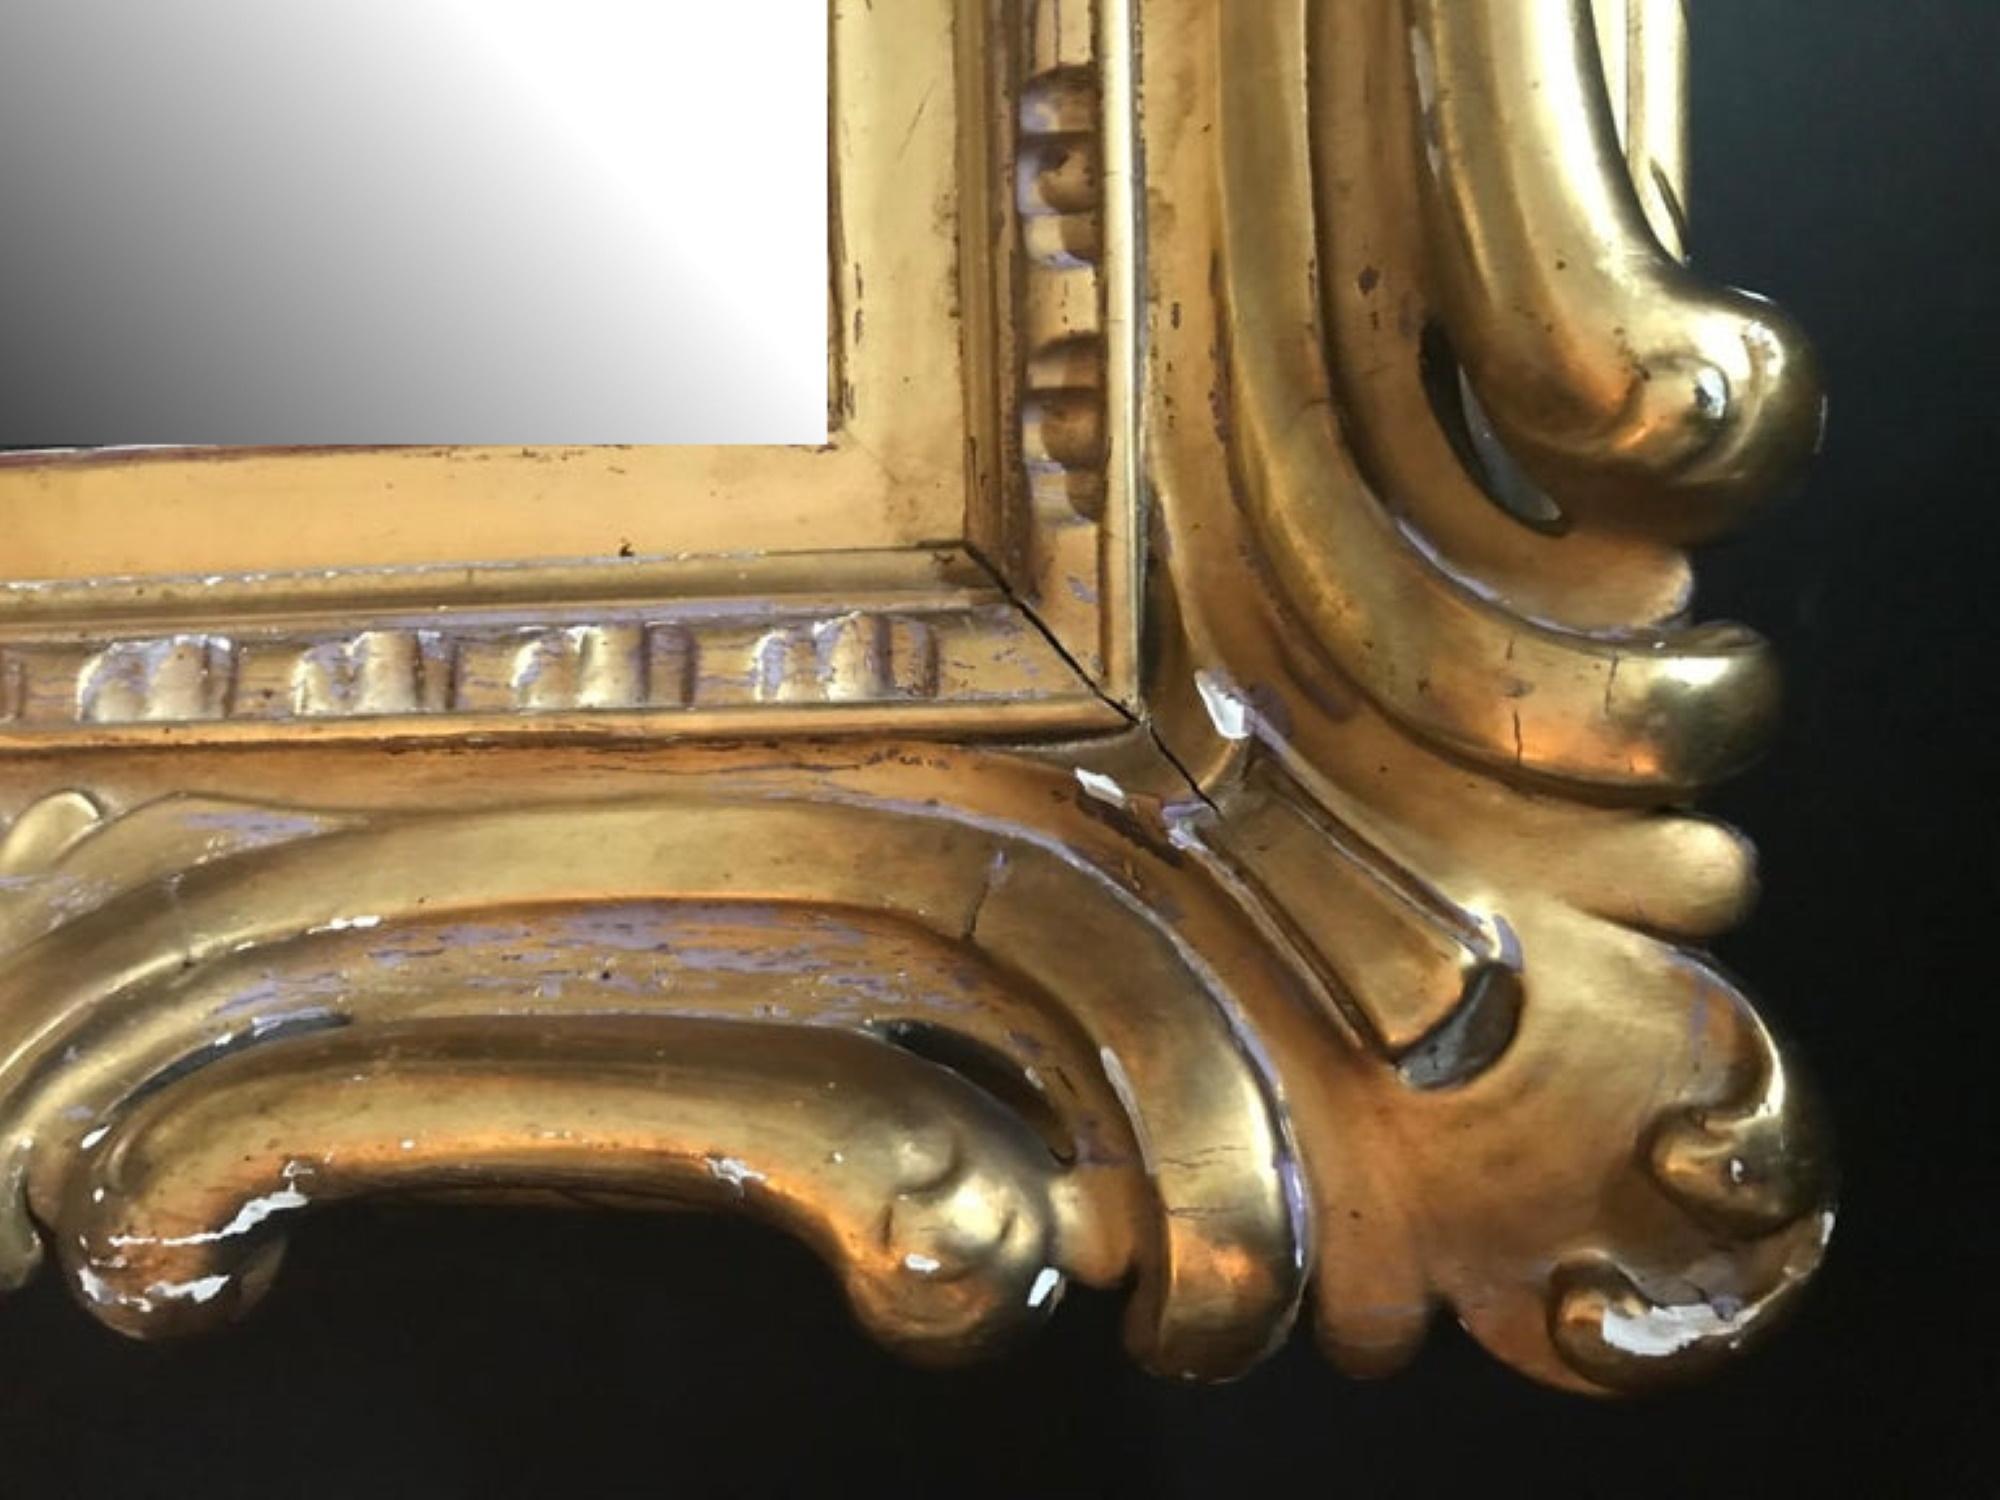 Il s'agit d'un magnifique miroir ancien de style vénitien Sansovino, sculpté en haut-relief, richement doré à l'eau et hautement bruni. Il s'agit certainement d'une pièce exceptionnelle du 19e siècle, à grande échelle et de qualité muséale. La